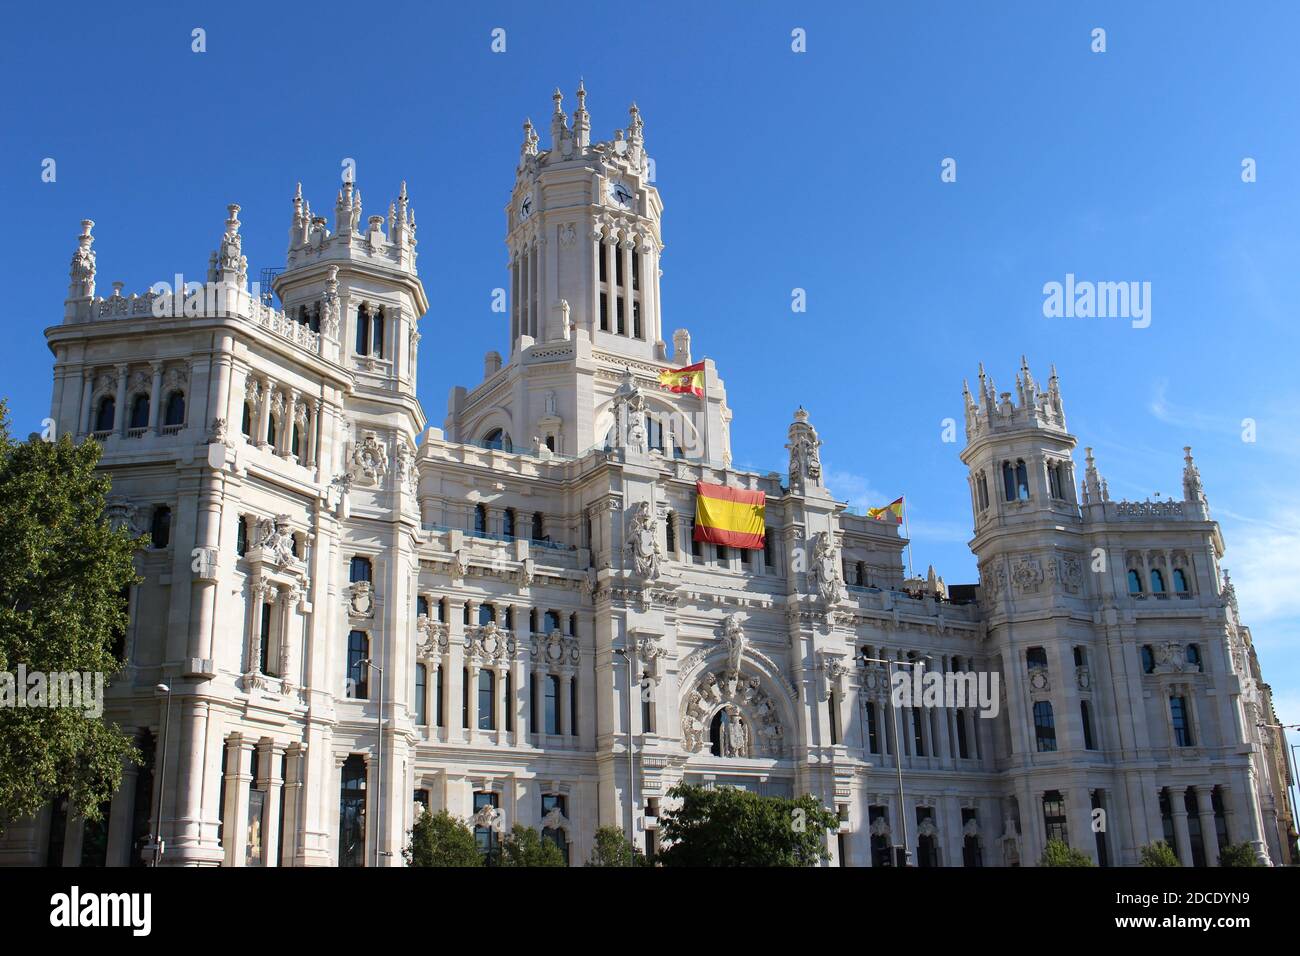 Madrid Palacio-de-Comunicaciones-Cibeles Stock Photo